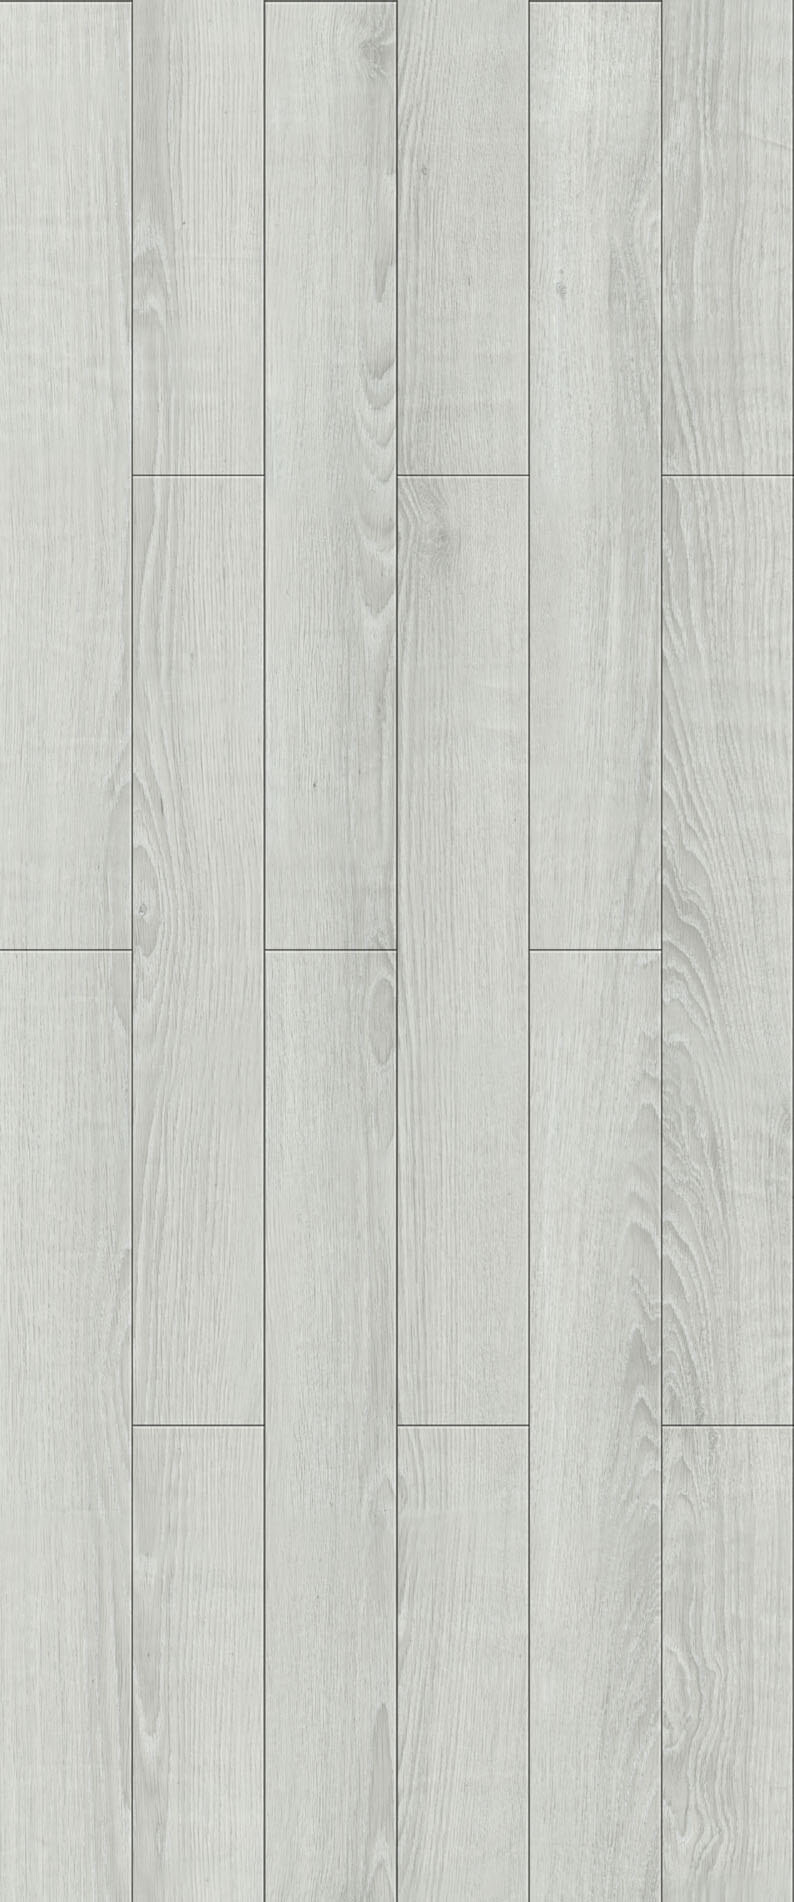 木地板 贴图 地板 木材贴图 木地板贴图 木地板效果图 木地板材质 地板设计素材 家居装饰素材 室内装饰用图